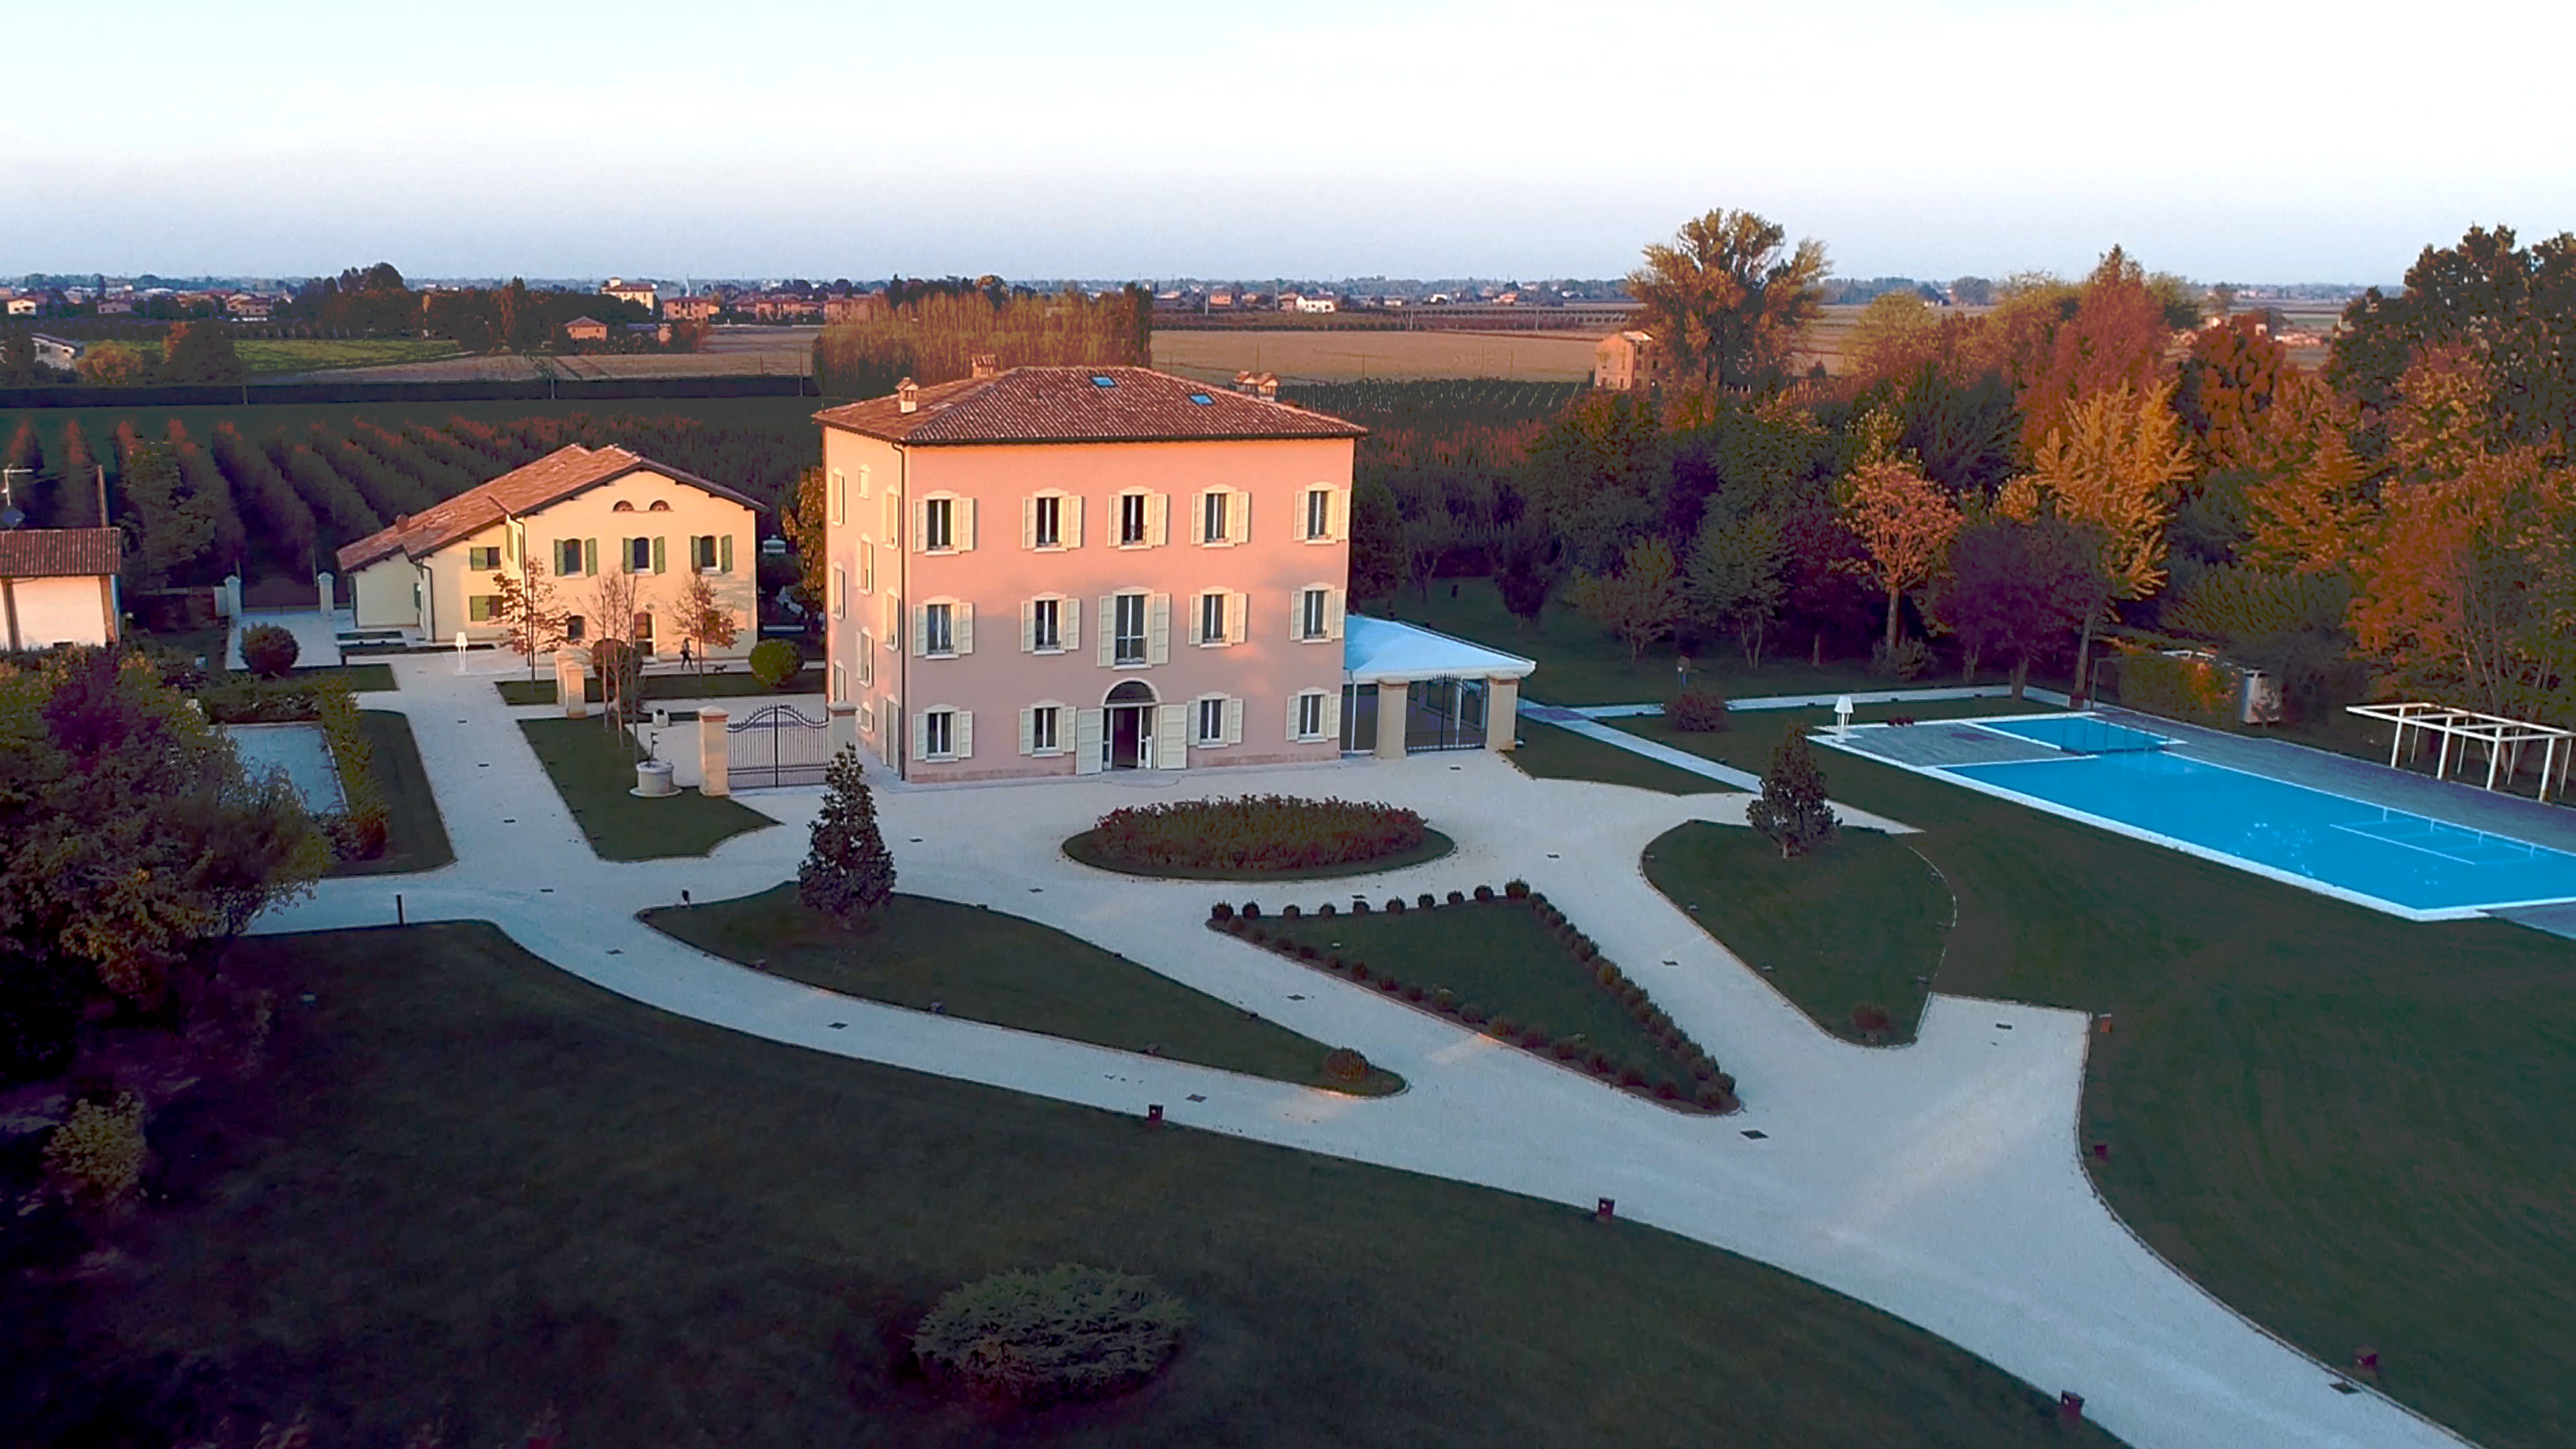 Villa Grazia meraviglia gli sposi.